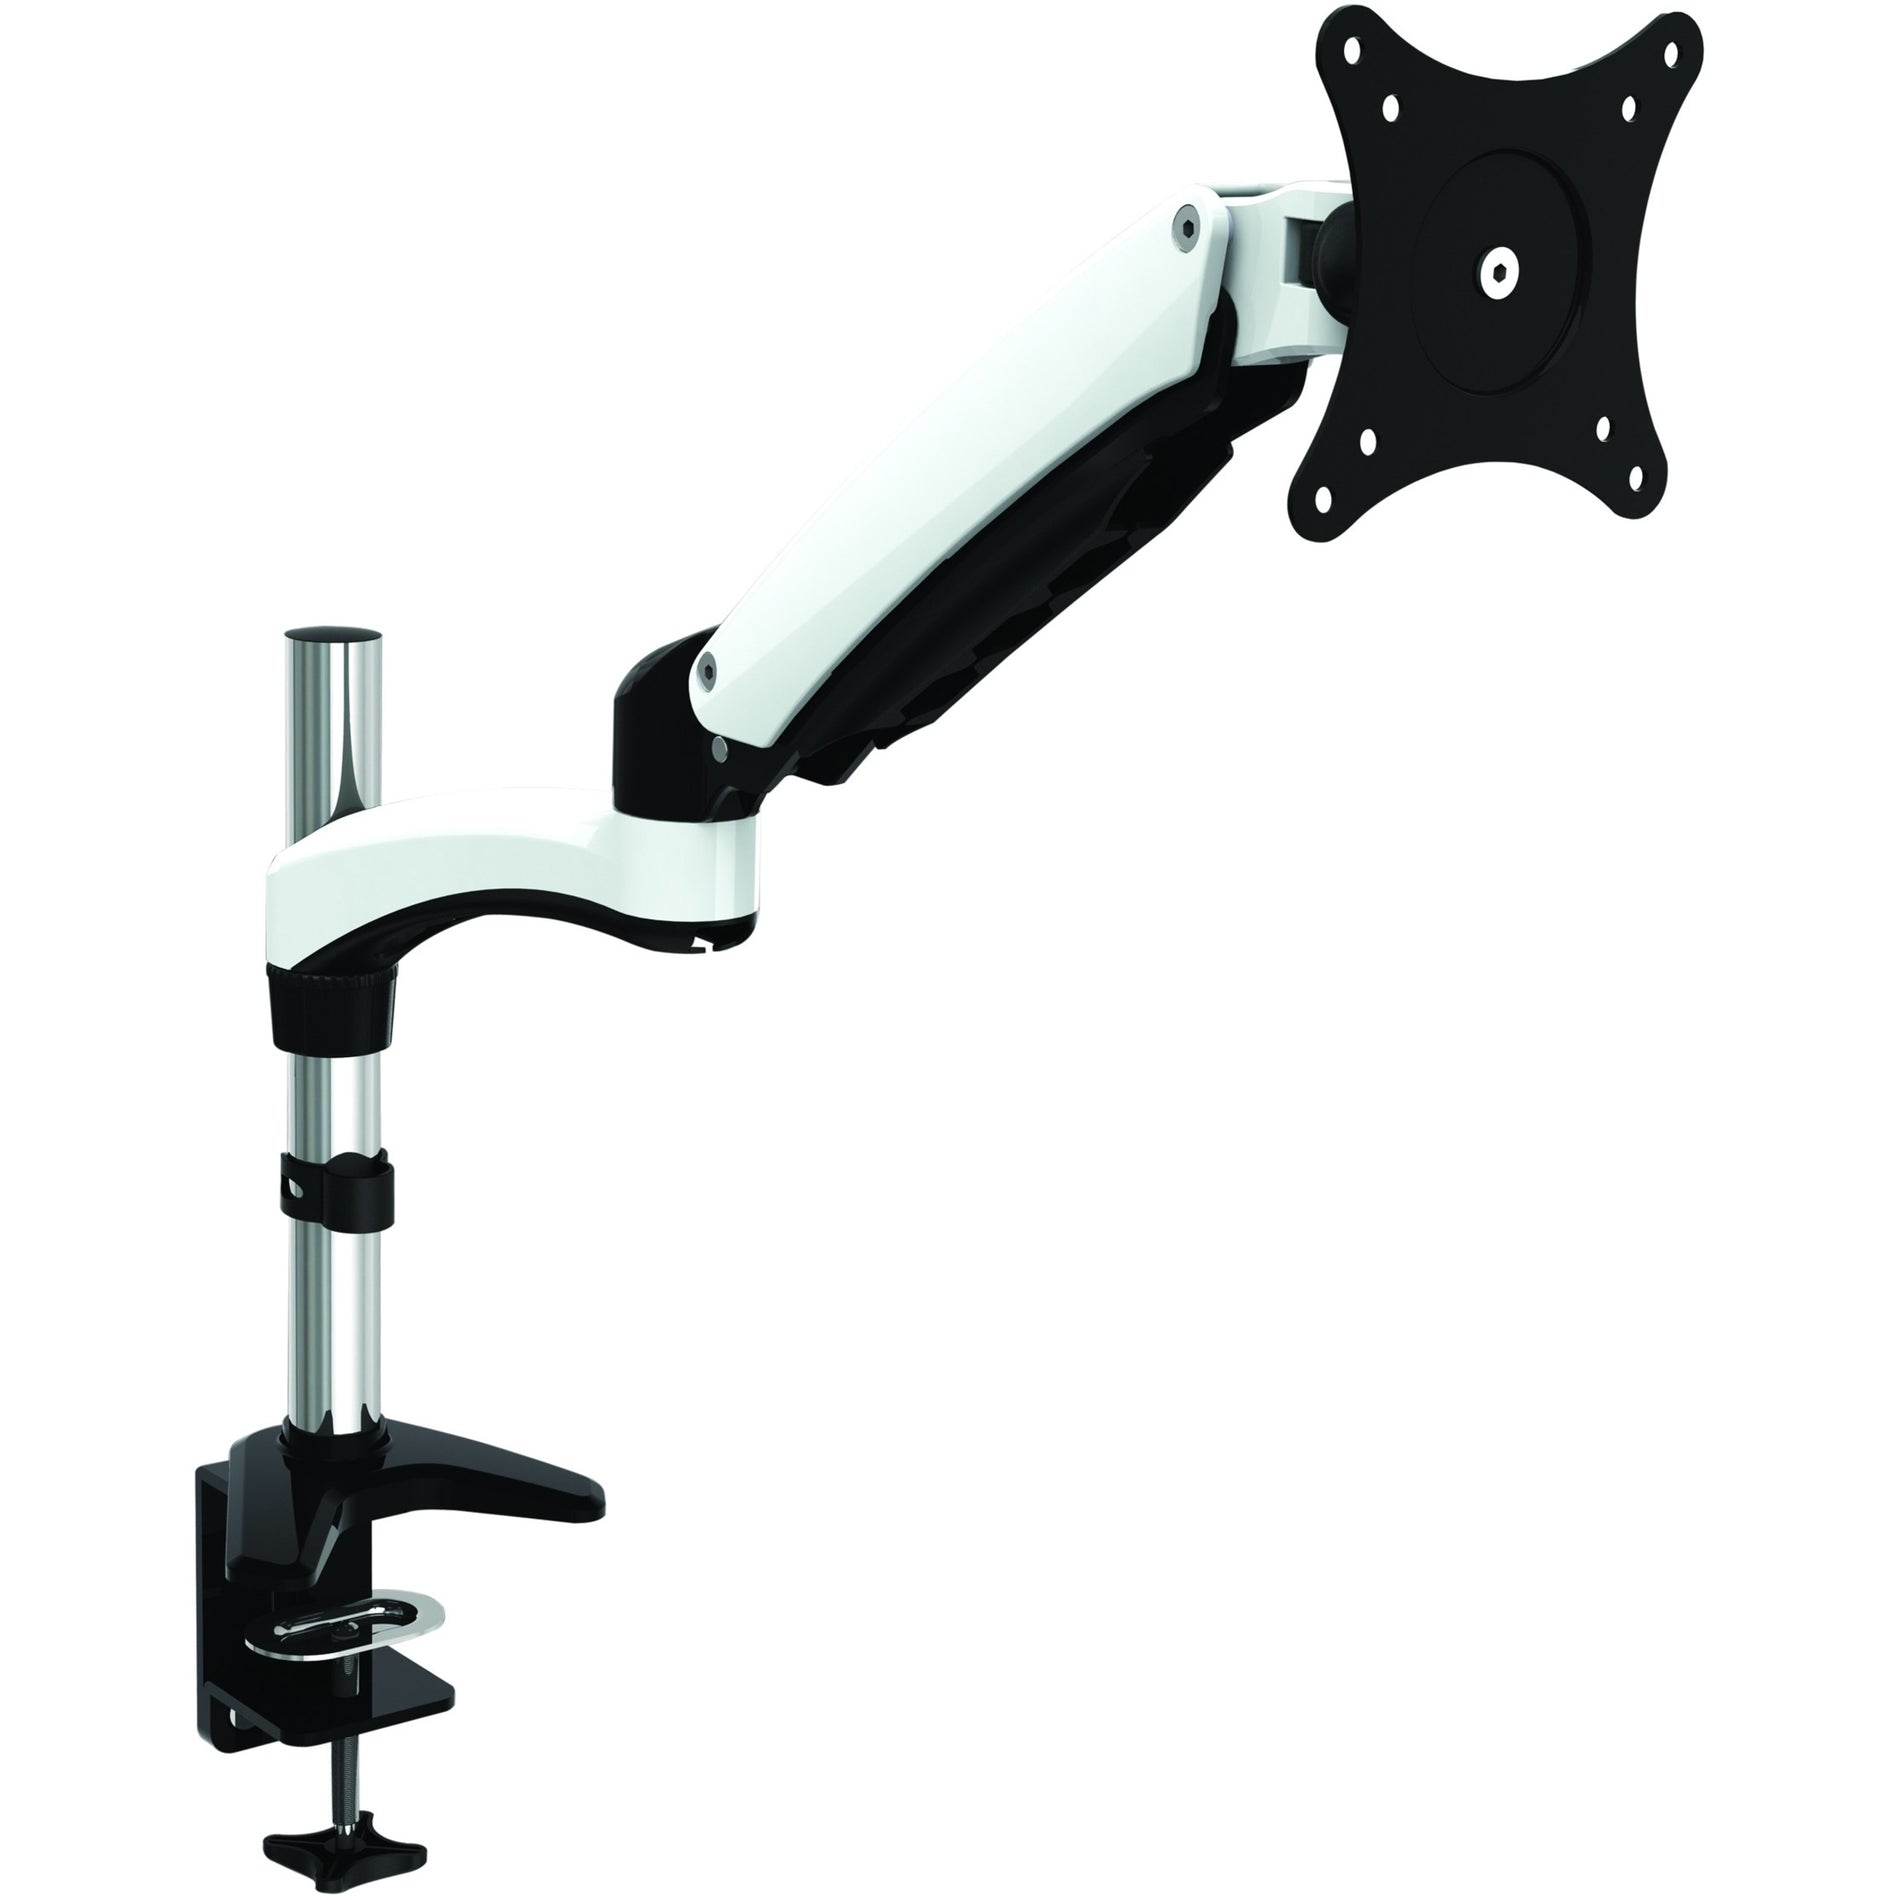 Supporto singolo per monitor HYDRA1 di Amer Mounts con braccio articolato estendibile inclinabile girevole resistente ergonomico